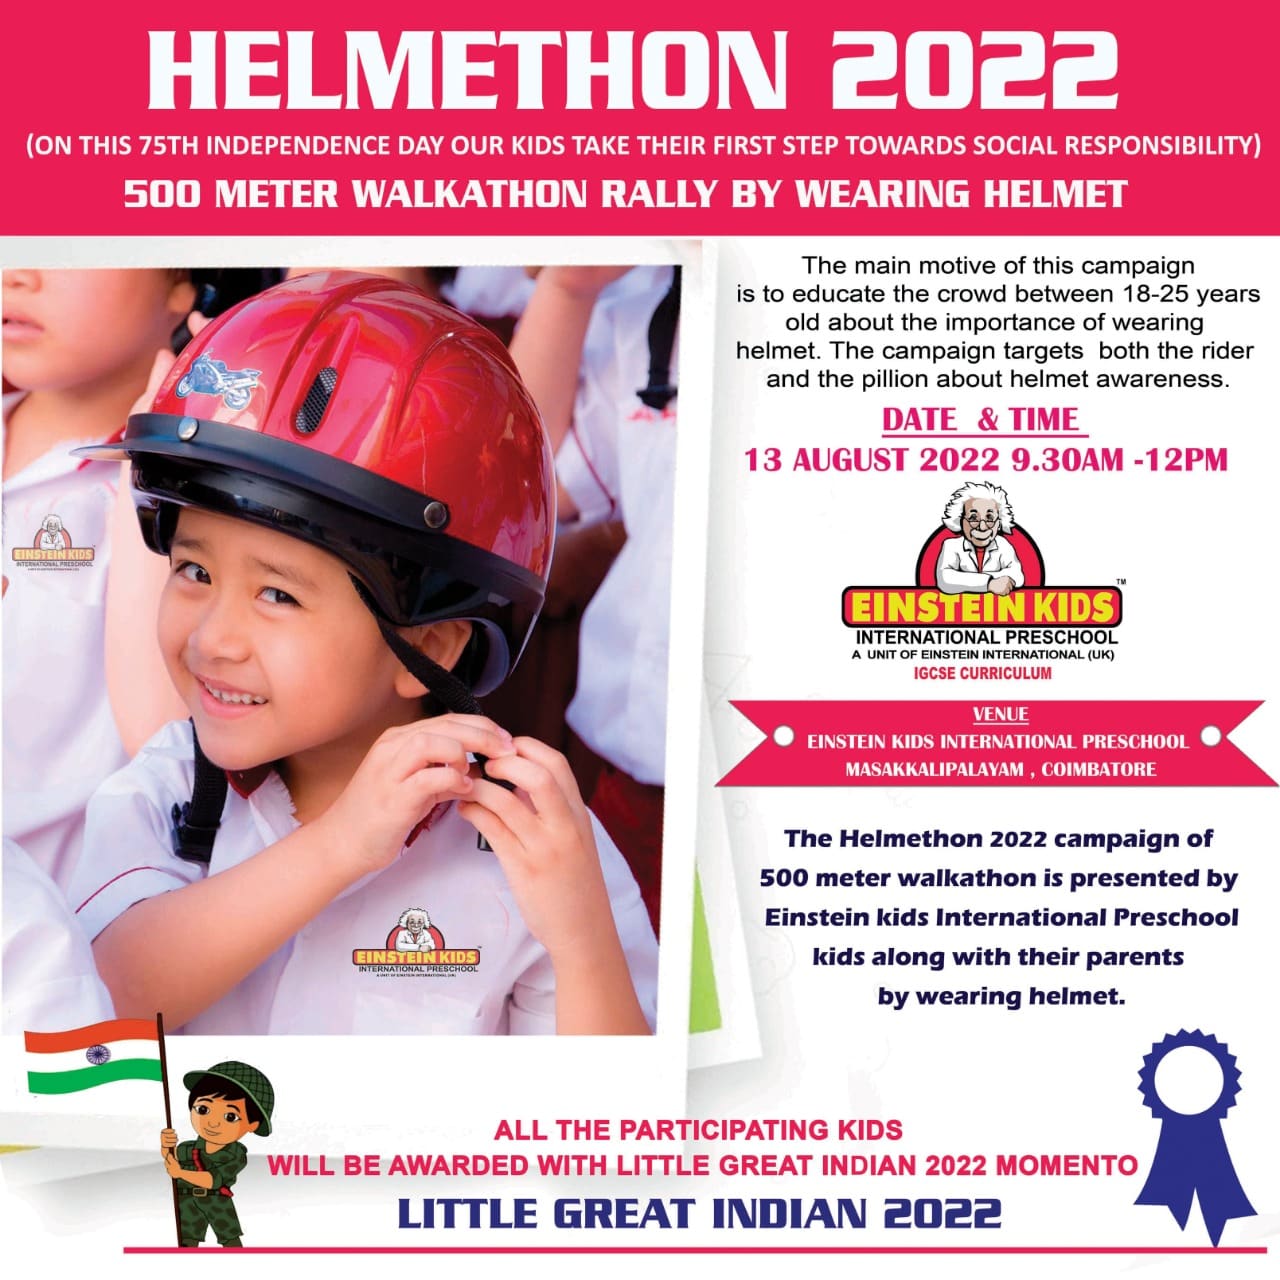 HELMETHON 2022 - Einstein Kids International Preschool